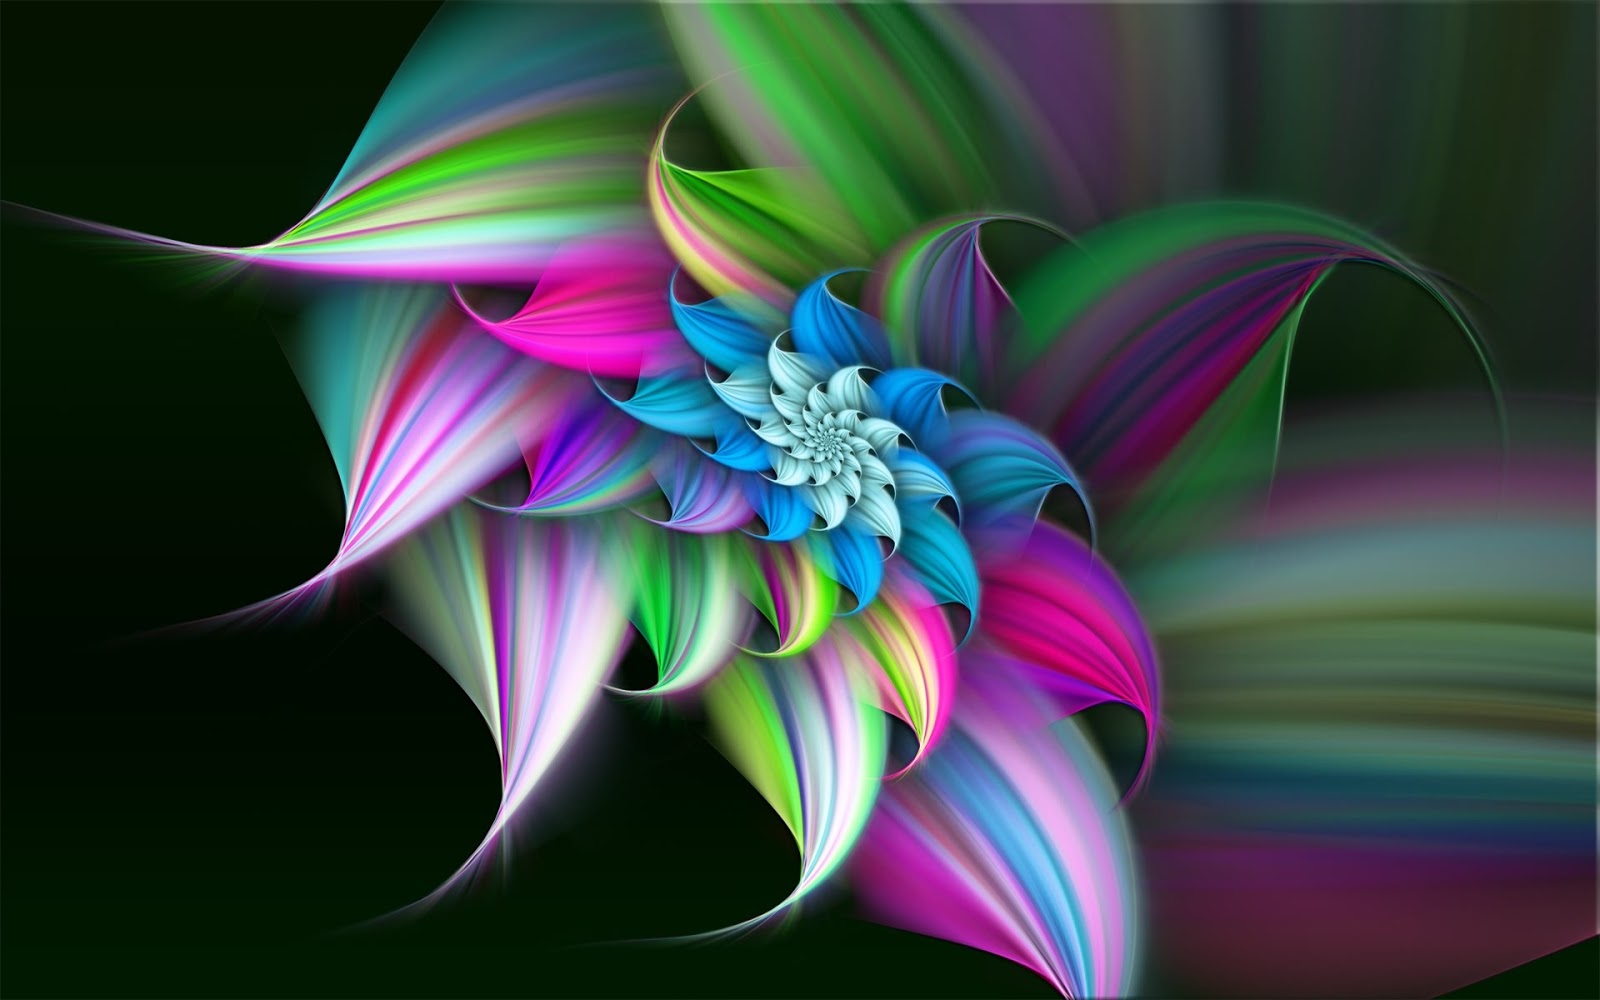 Colores+hermosos+en+una+figura+en+forma+de+una+bella+flor.jpg